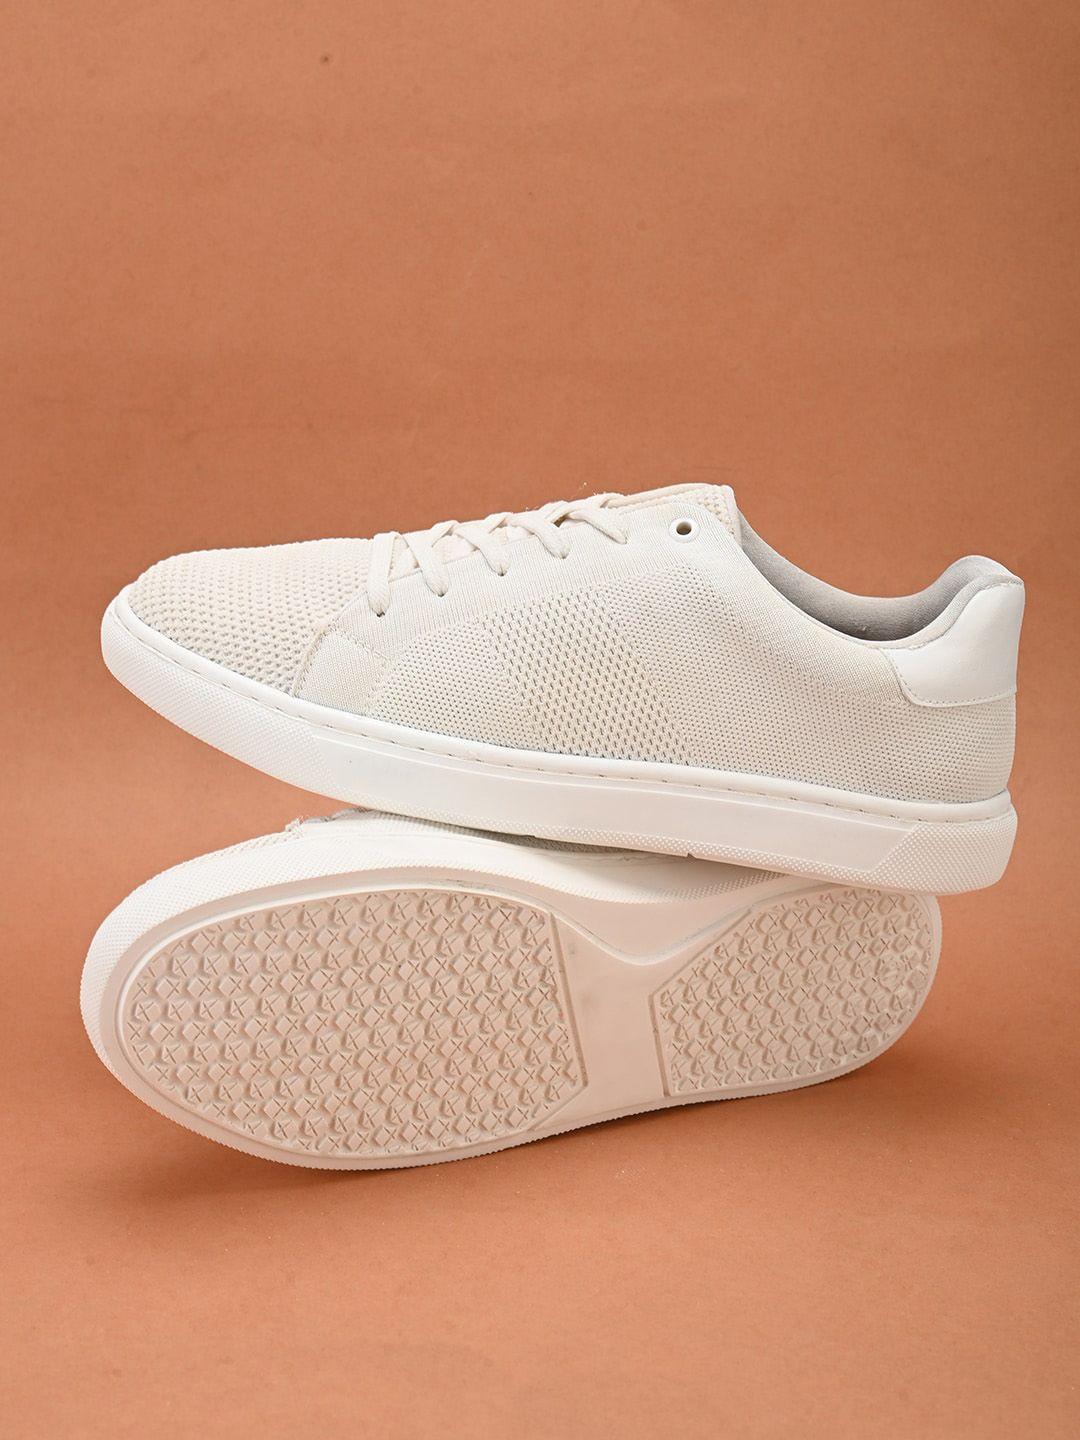 hrx by hrithik roshan men white woven design lightweight sneakers